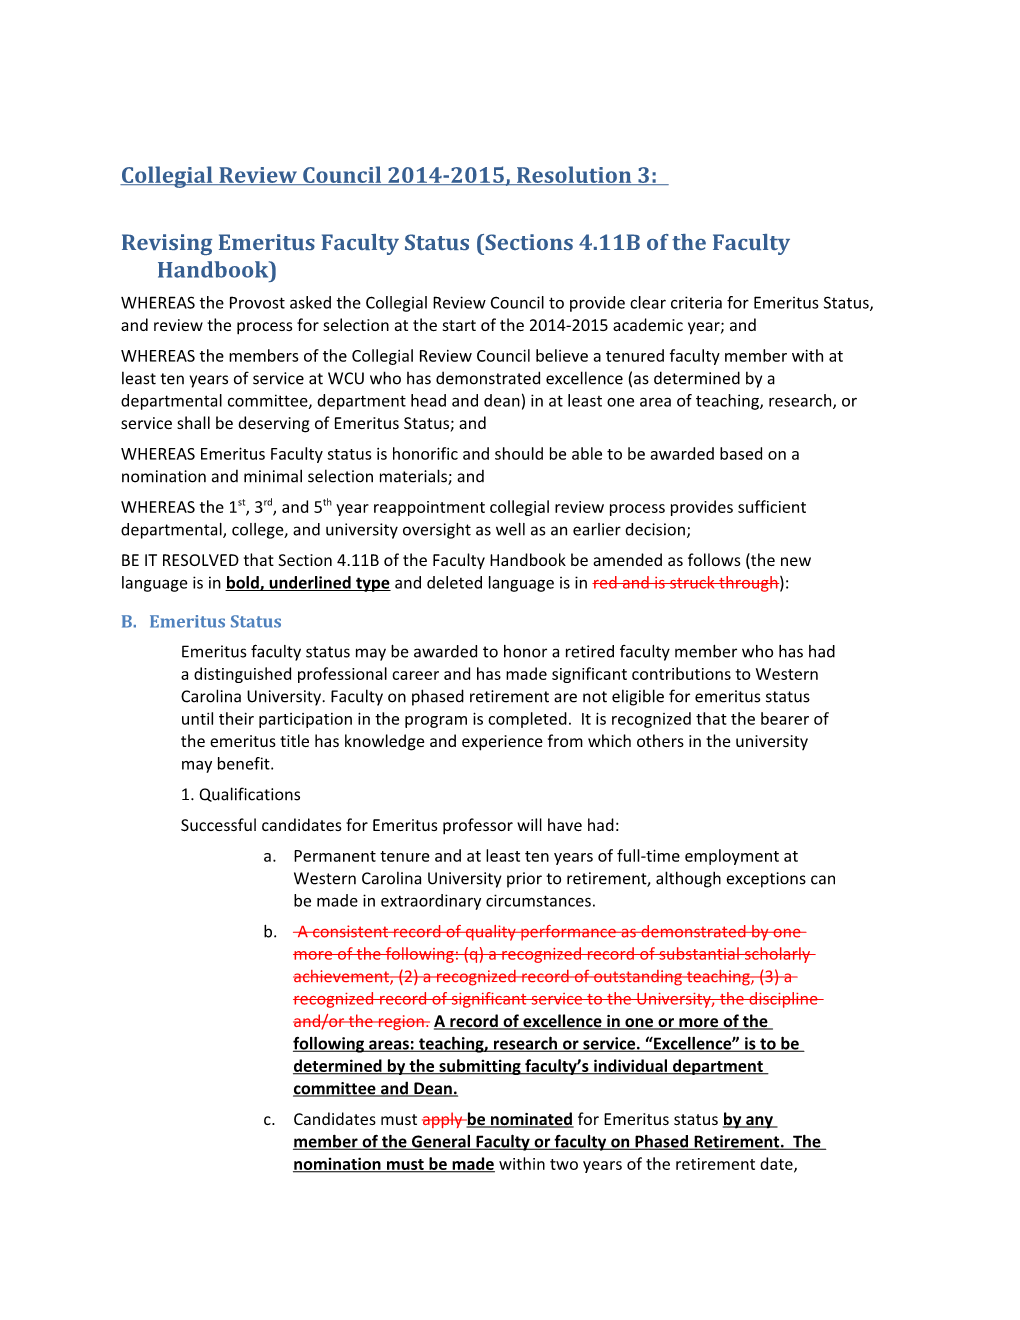 CRC Resolution4 Forvote 4-23-2014 Emeritusfacultystatusupdates